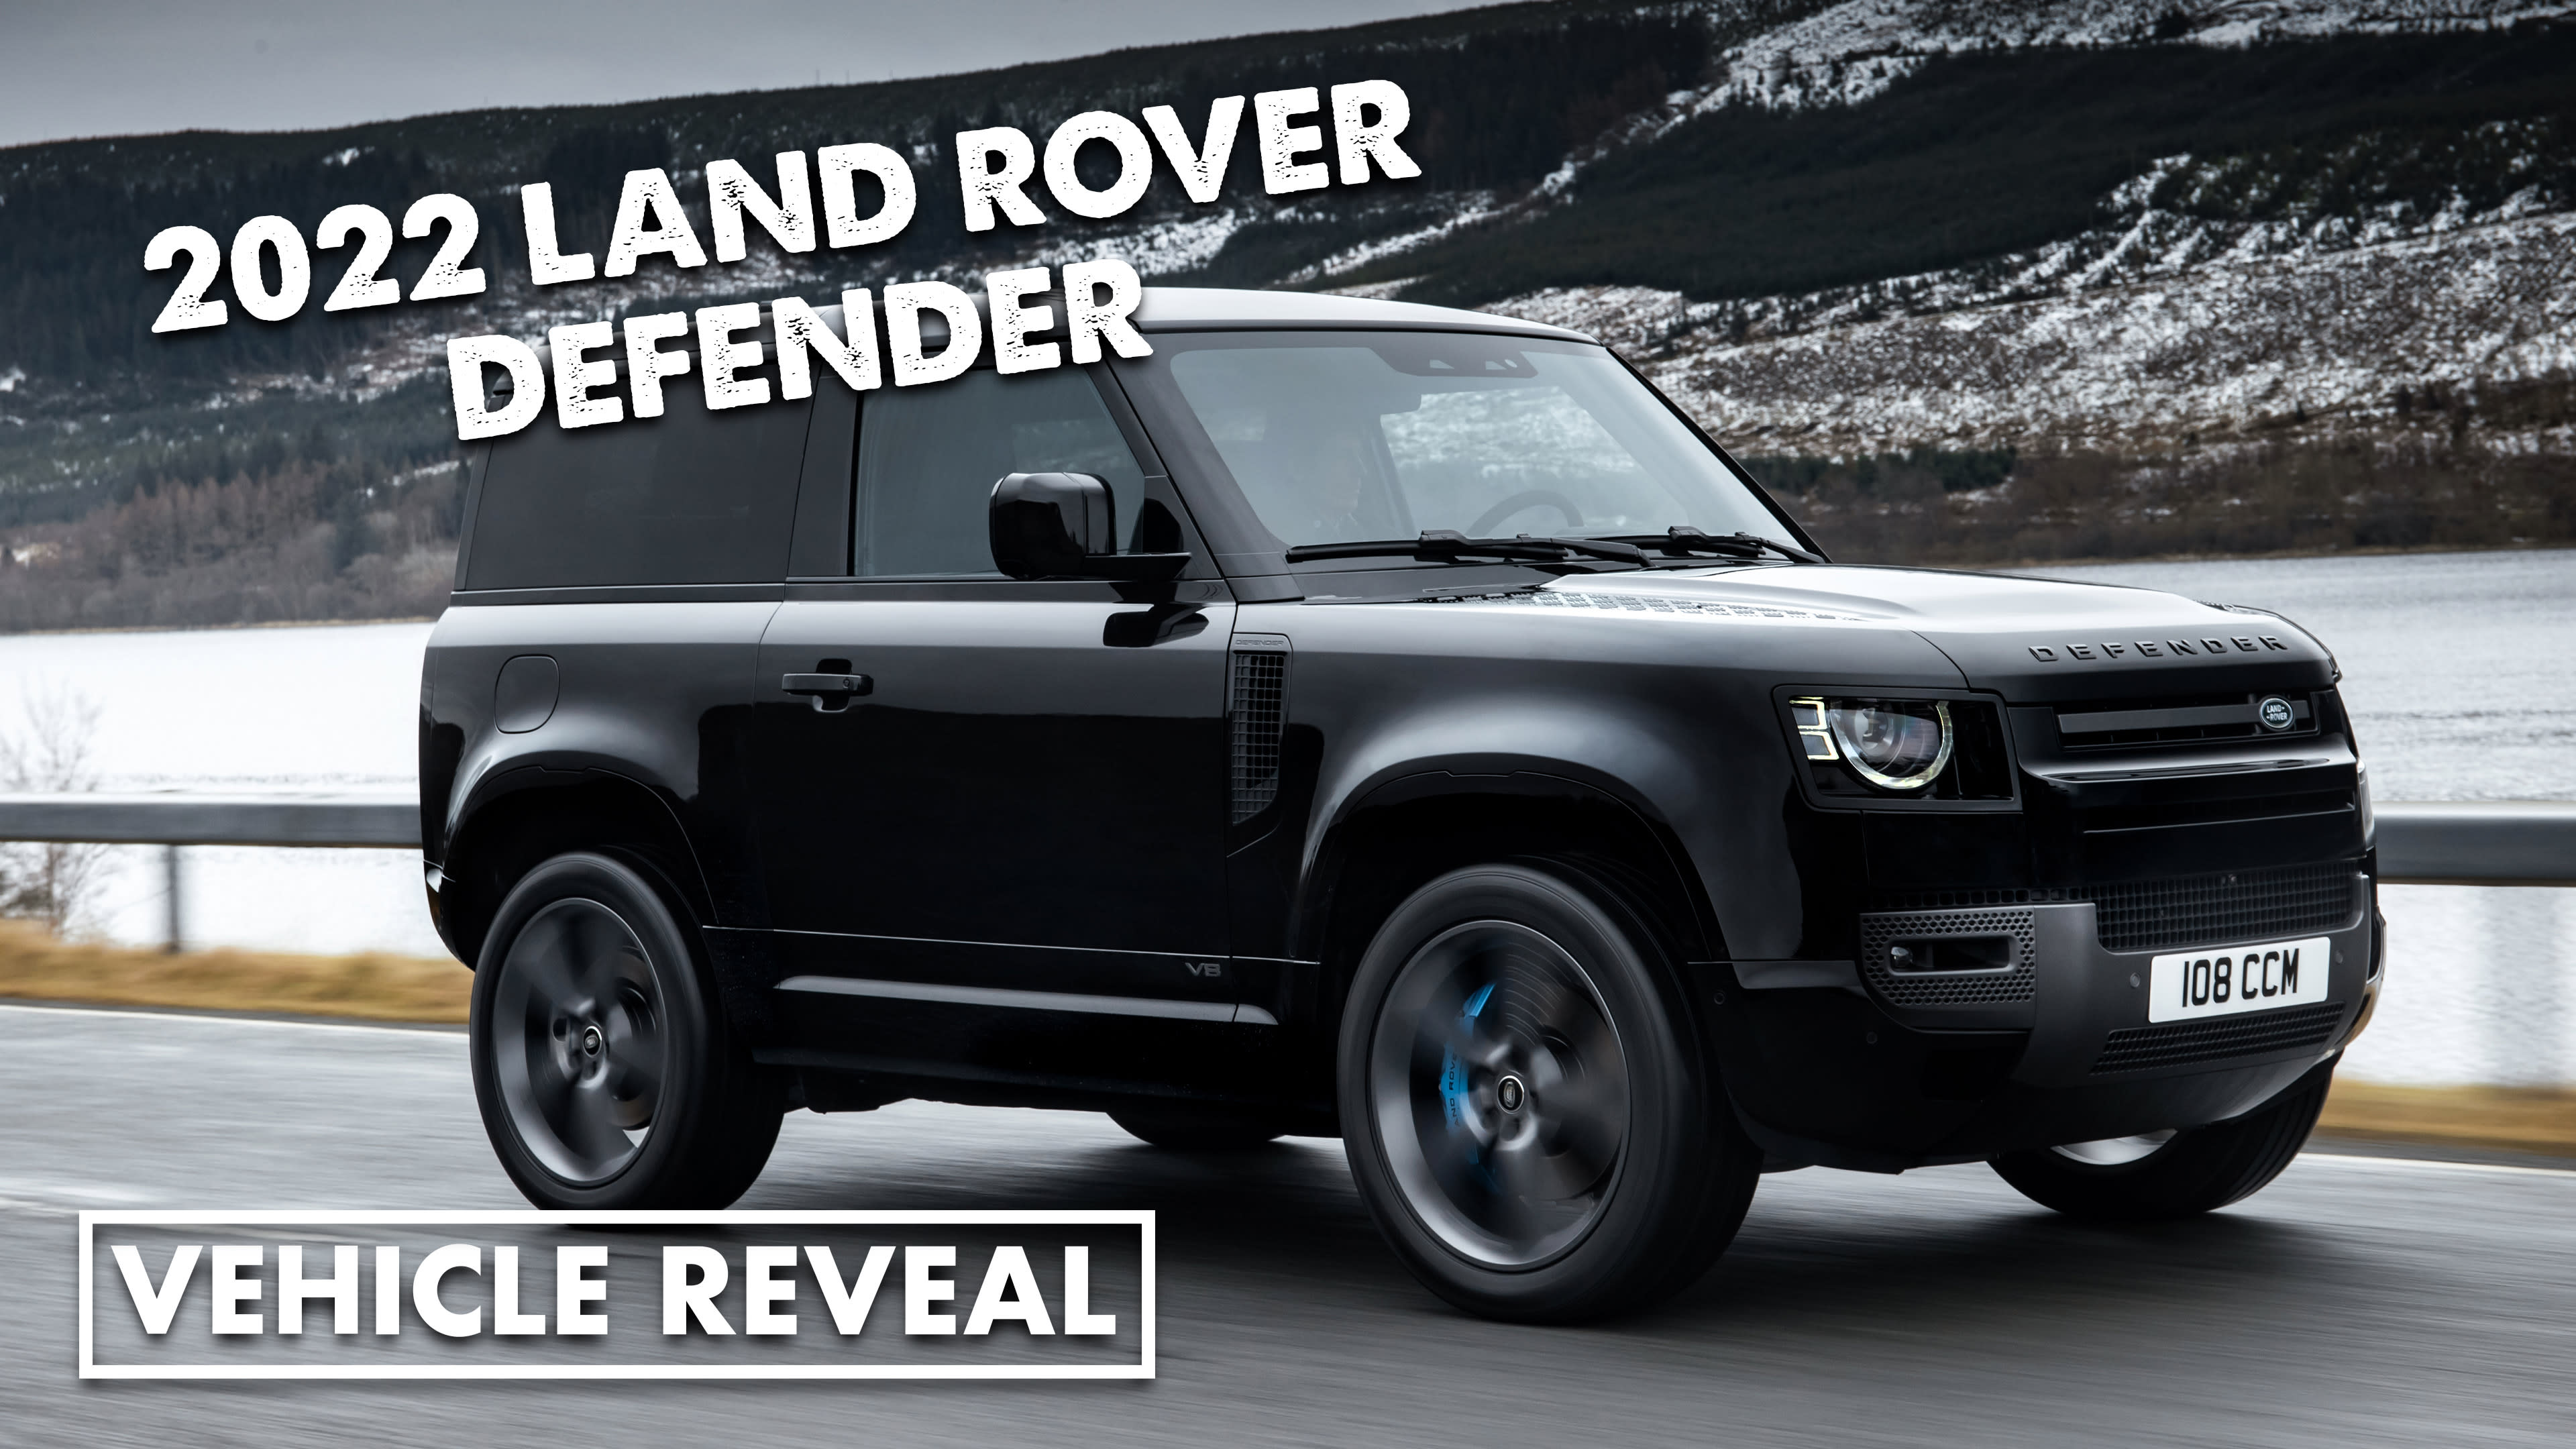 2022 Land Rover Defender revealed - Yahoo Sport